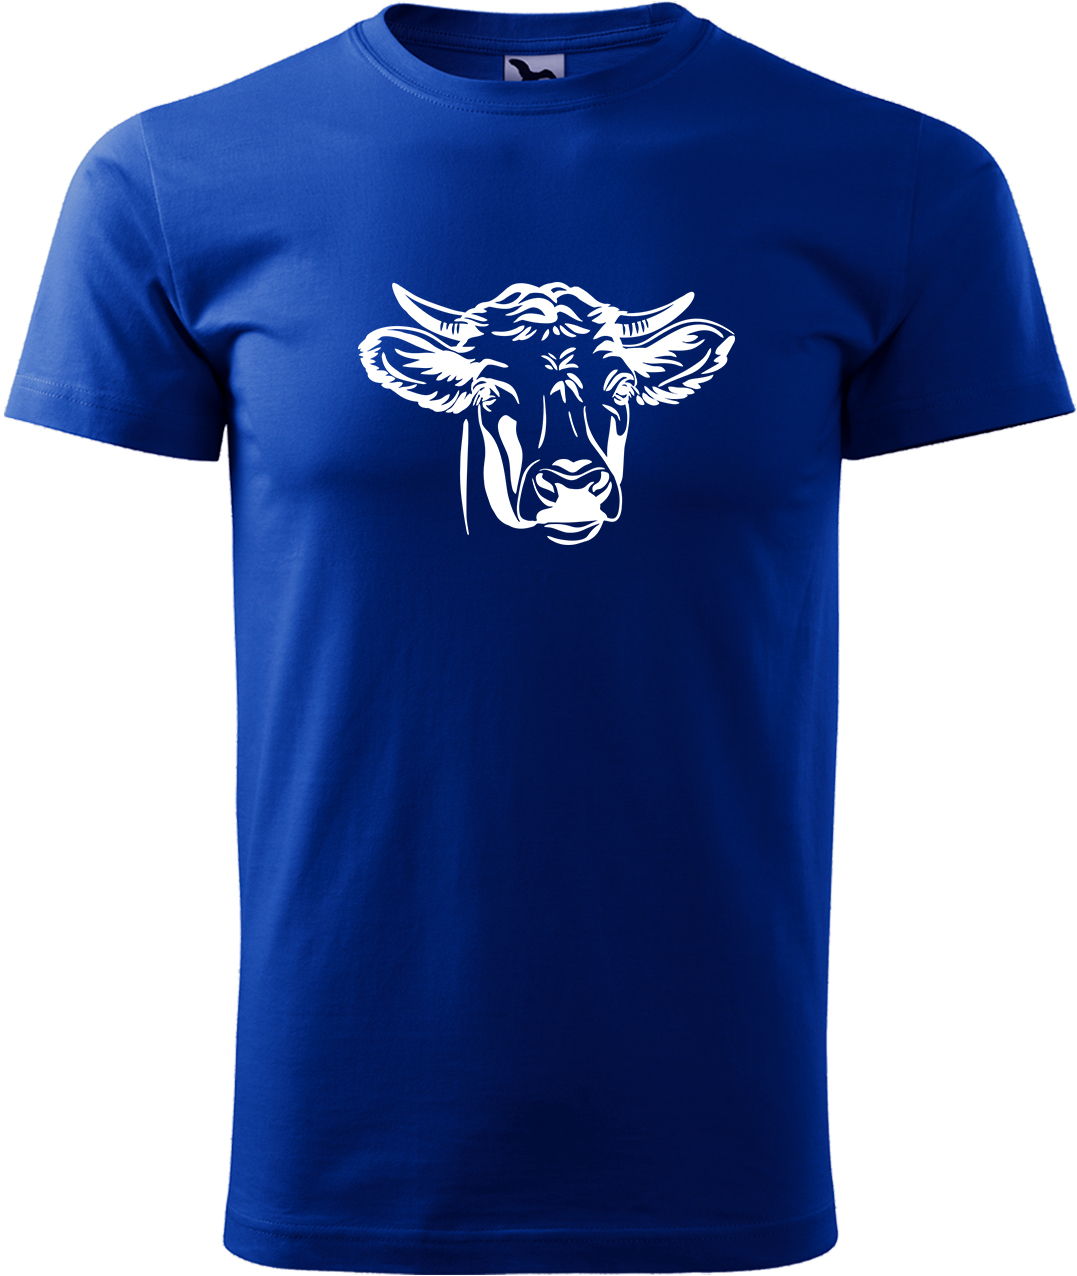 Pánské tričko s krávou - Hlava krávy Velikost: L, Barva: Královská modrá (05), Střih: pánský